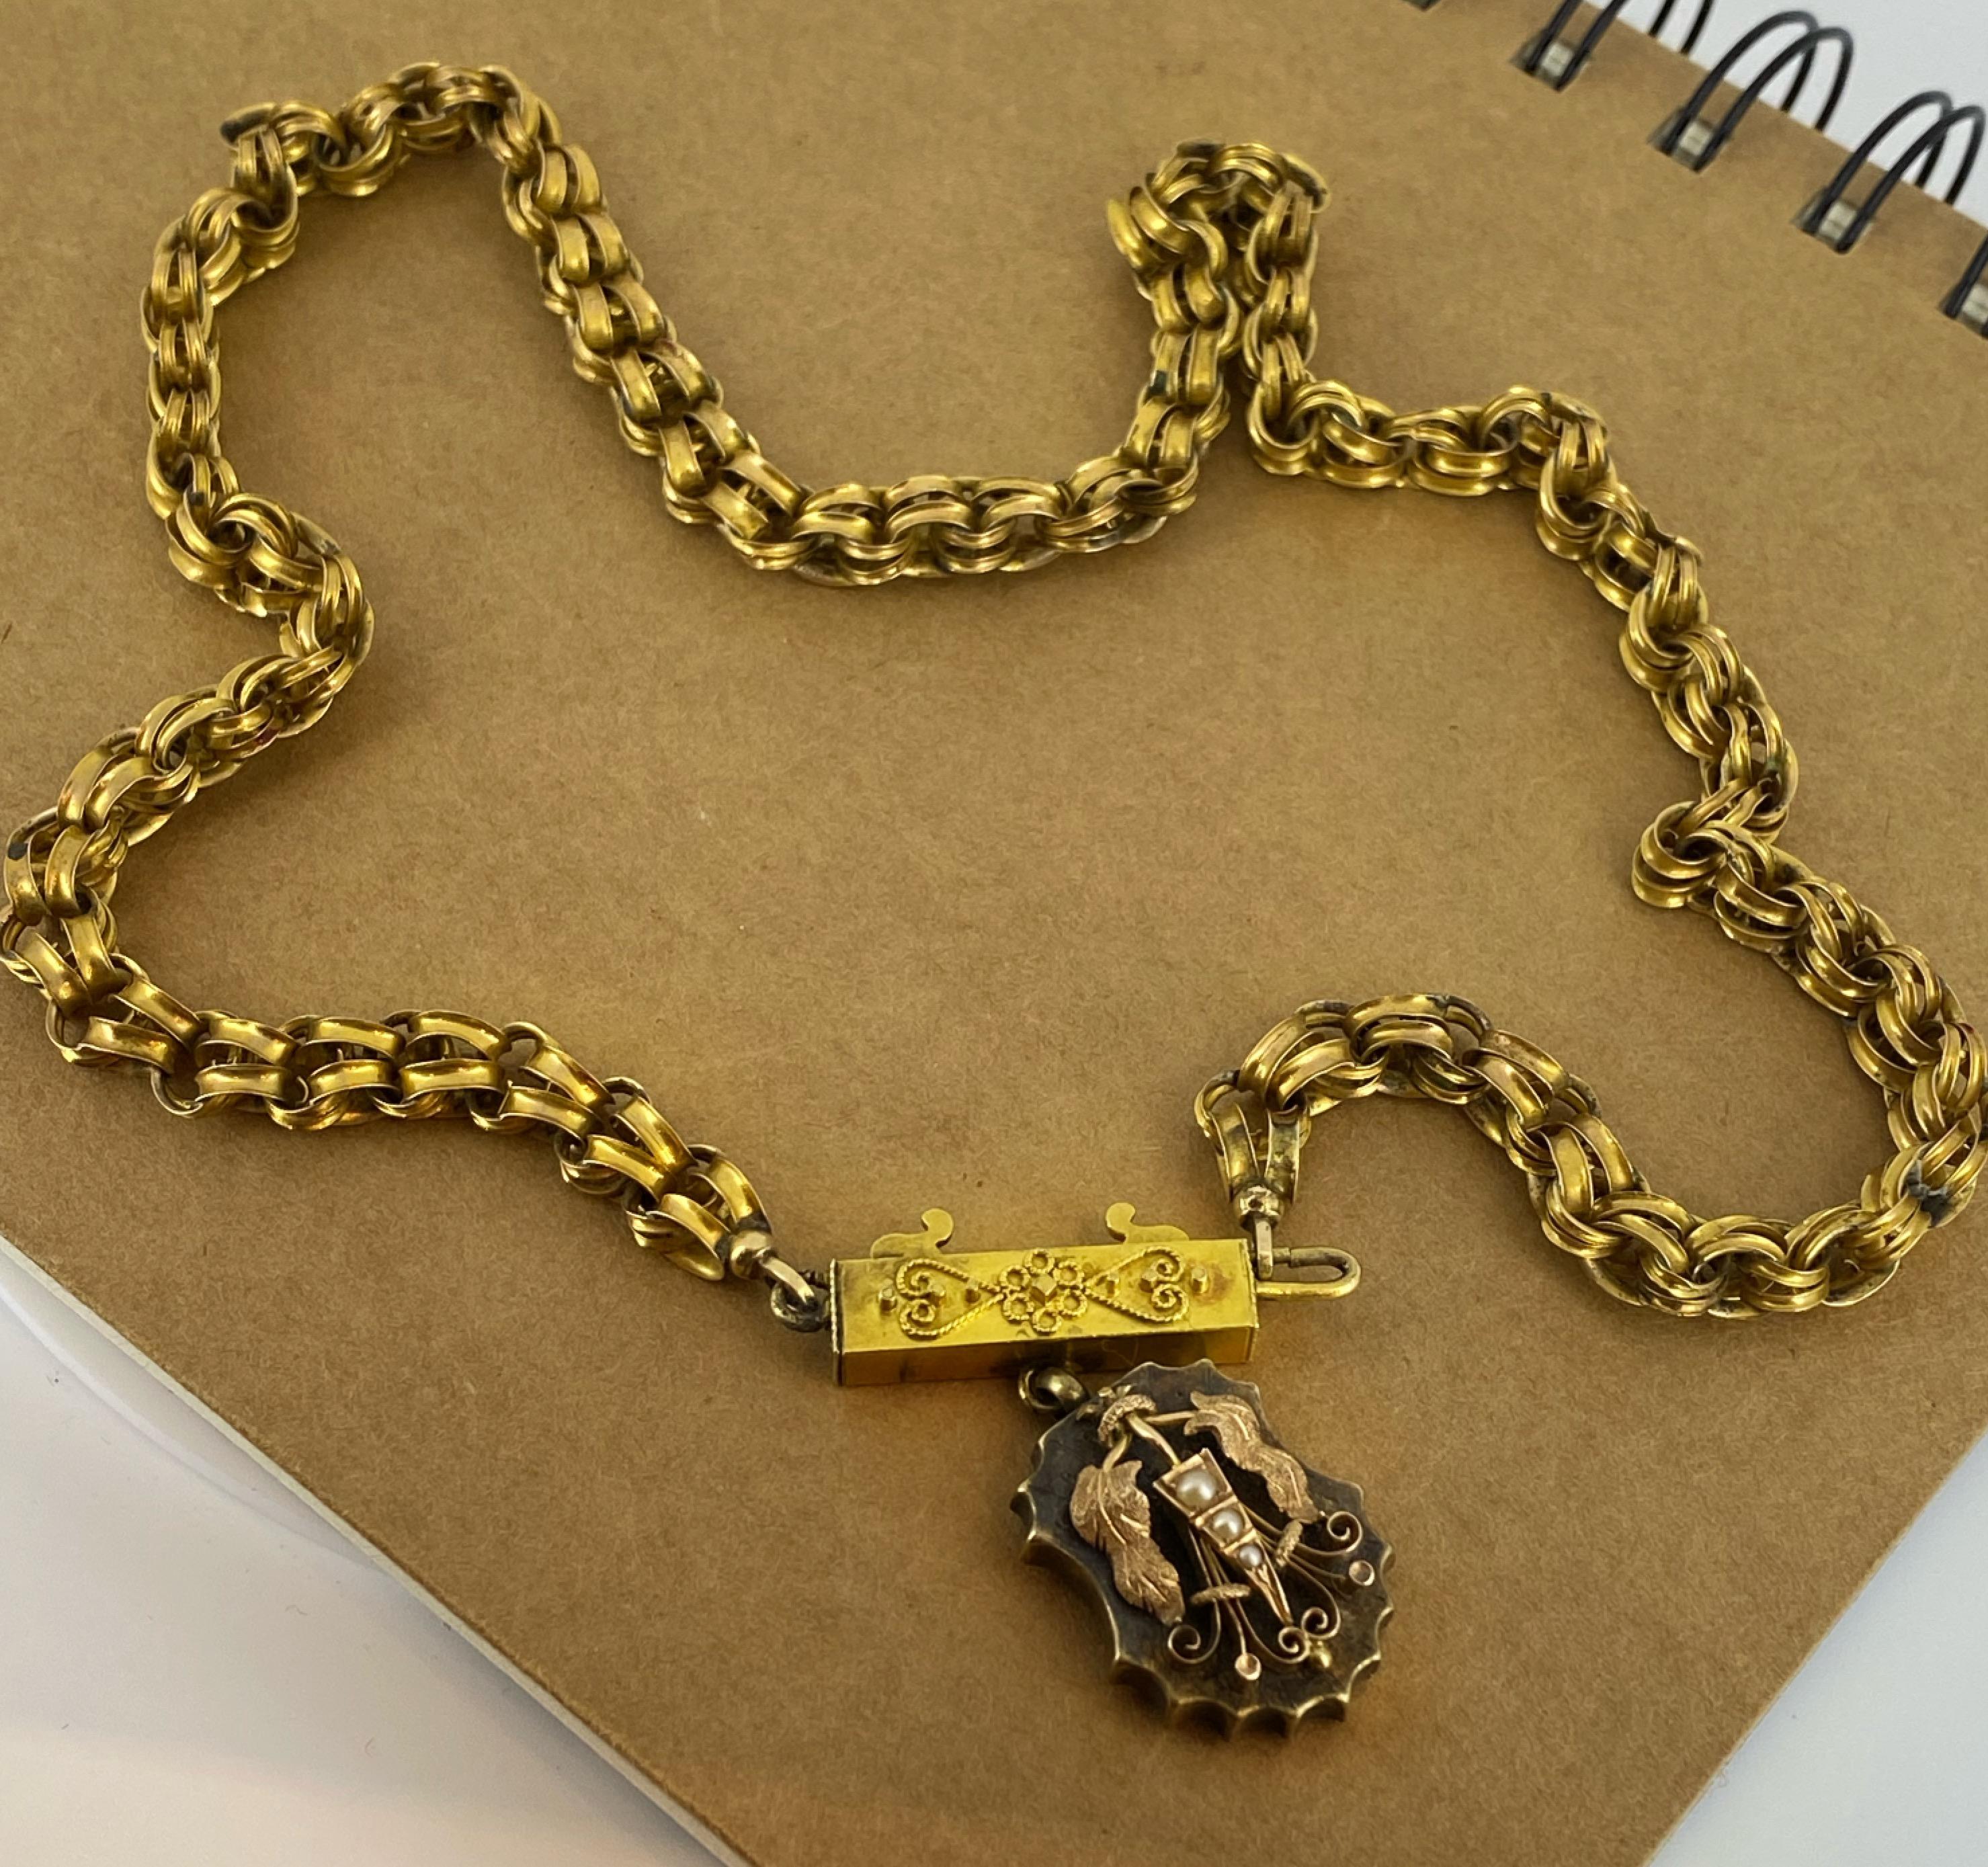 Diese antike georgianische Halskette ist ein wahrer Schatz & ein seltener Fund...

Gefertigt aus 15 Karat Gelbgold, 
Sie ist mit einem schildförmigen Medaillon-Anhänger versehen, 
als Schutzschild konzipiert, 
aufwendig verziert mit Blättern (in